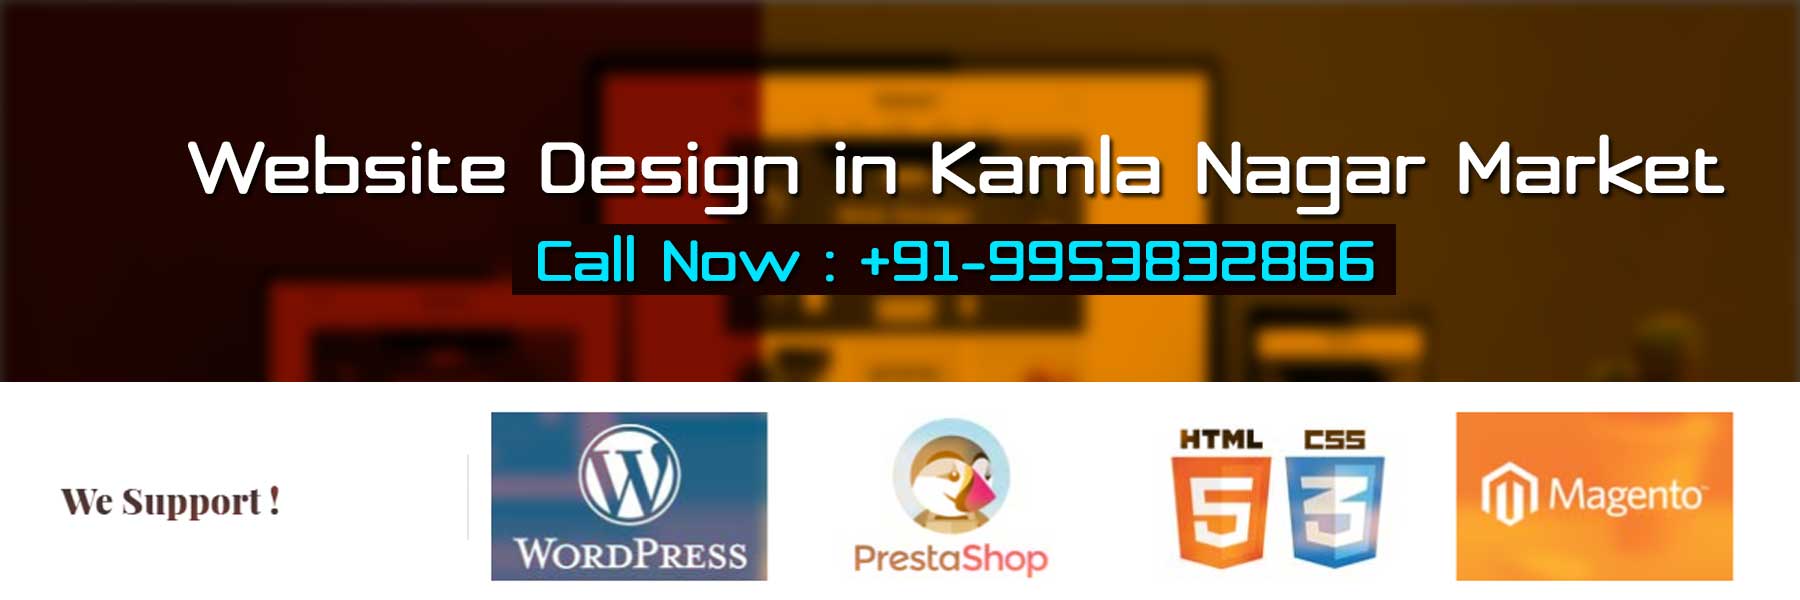 Website Design in Kamla Nagar Market